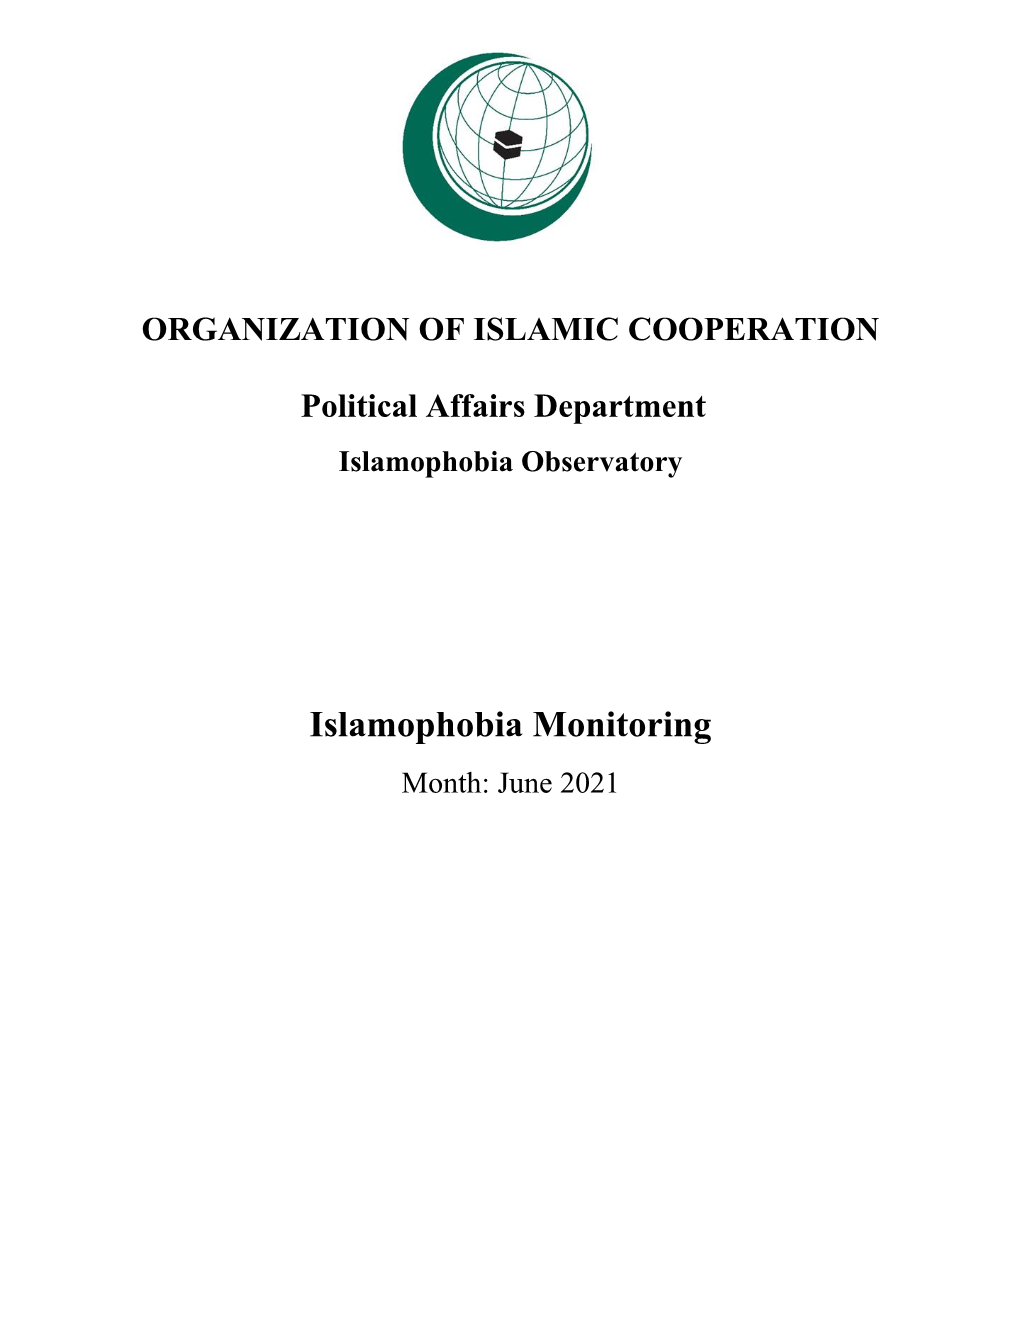 Islamophobia Monitoring Month: June 2021